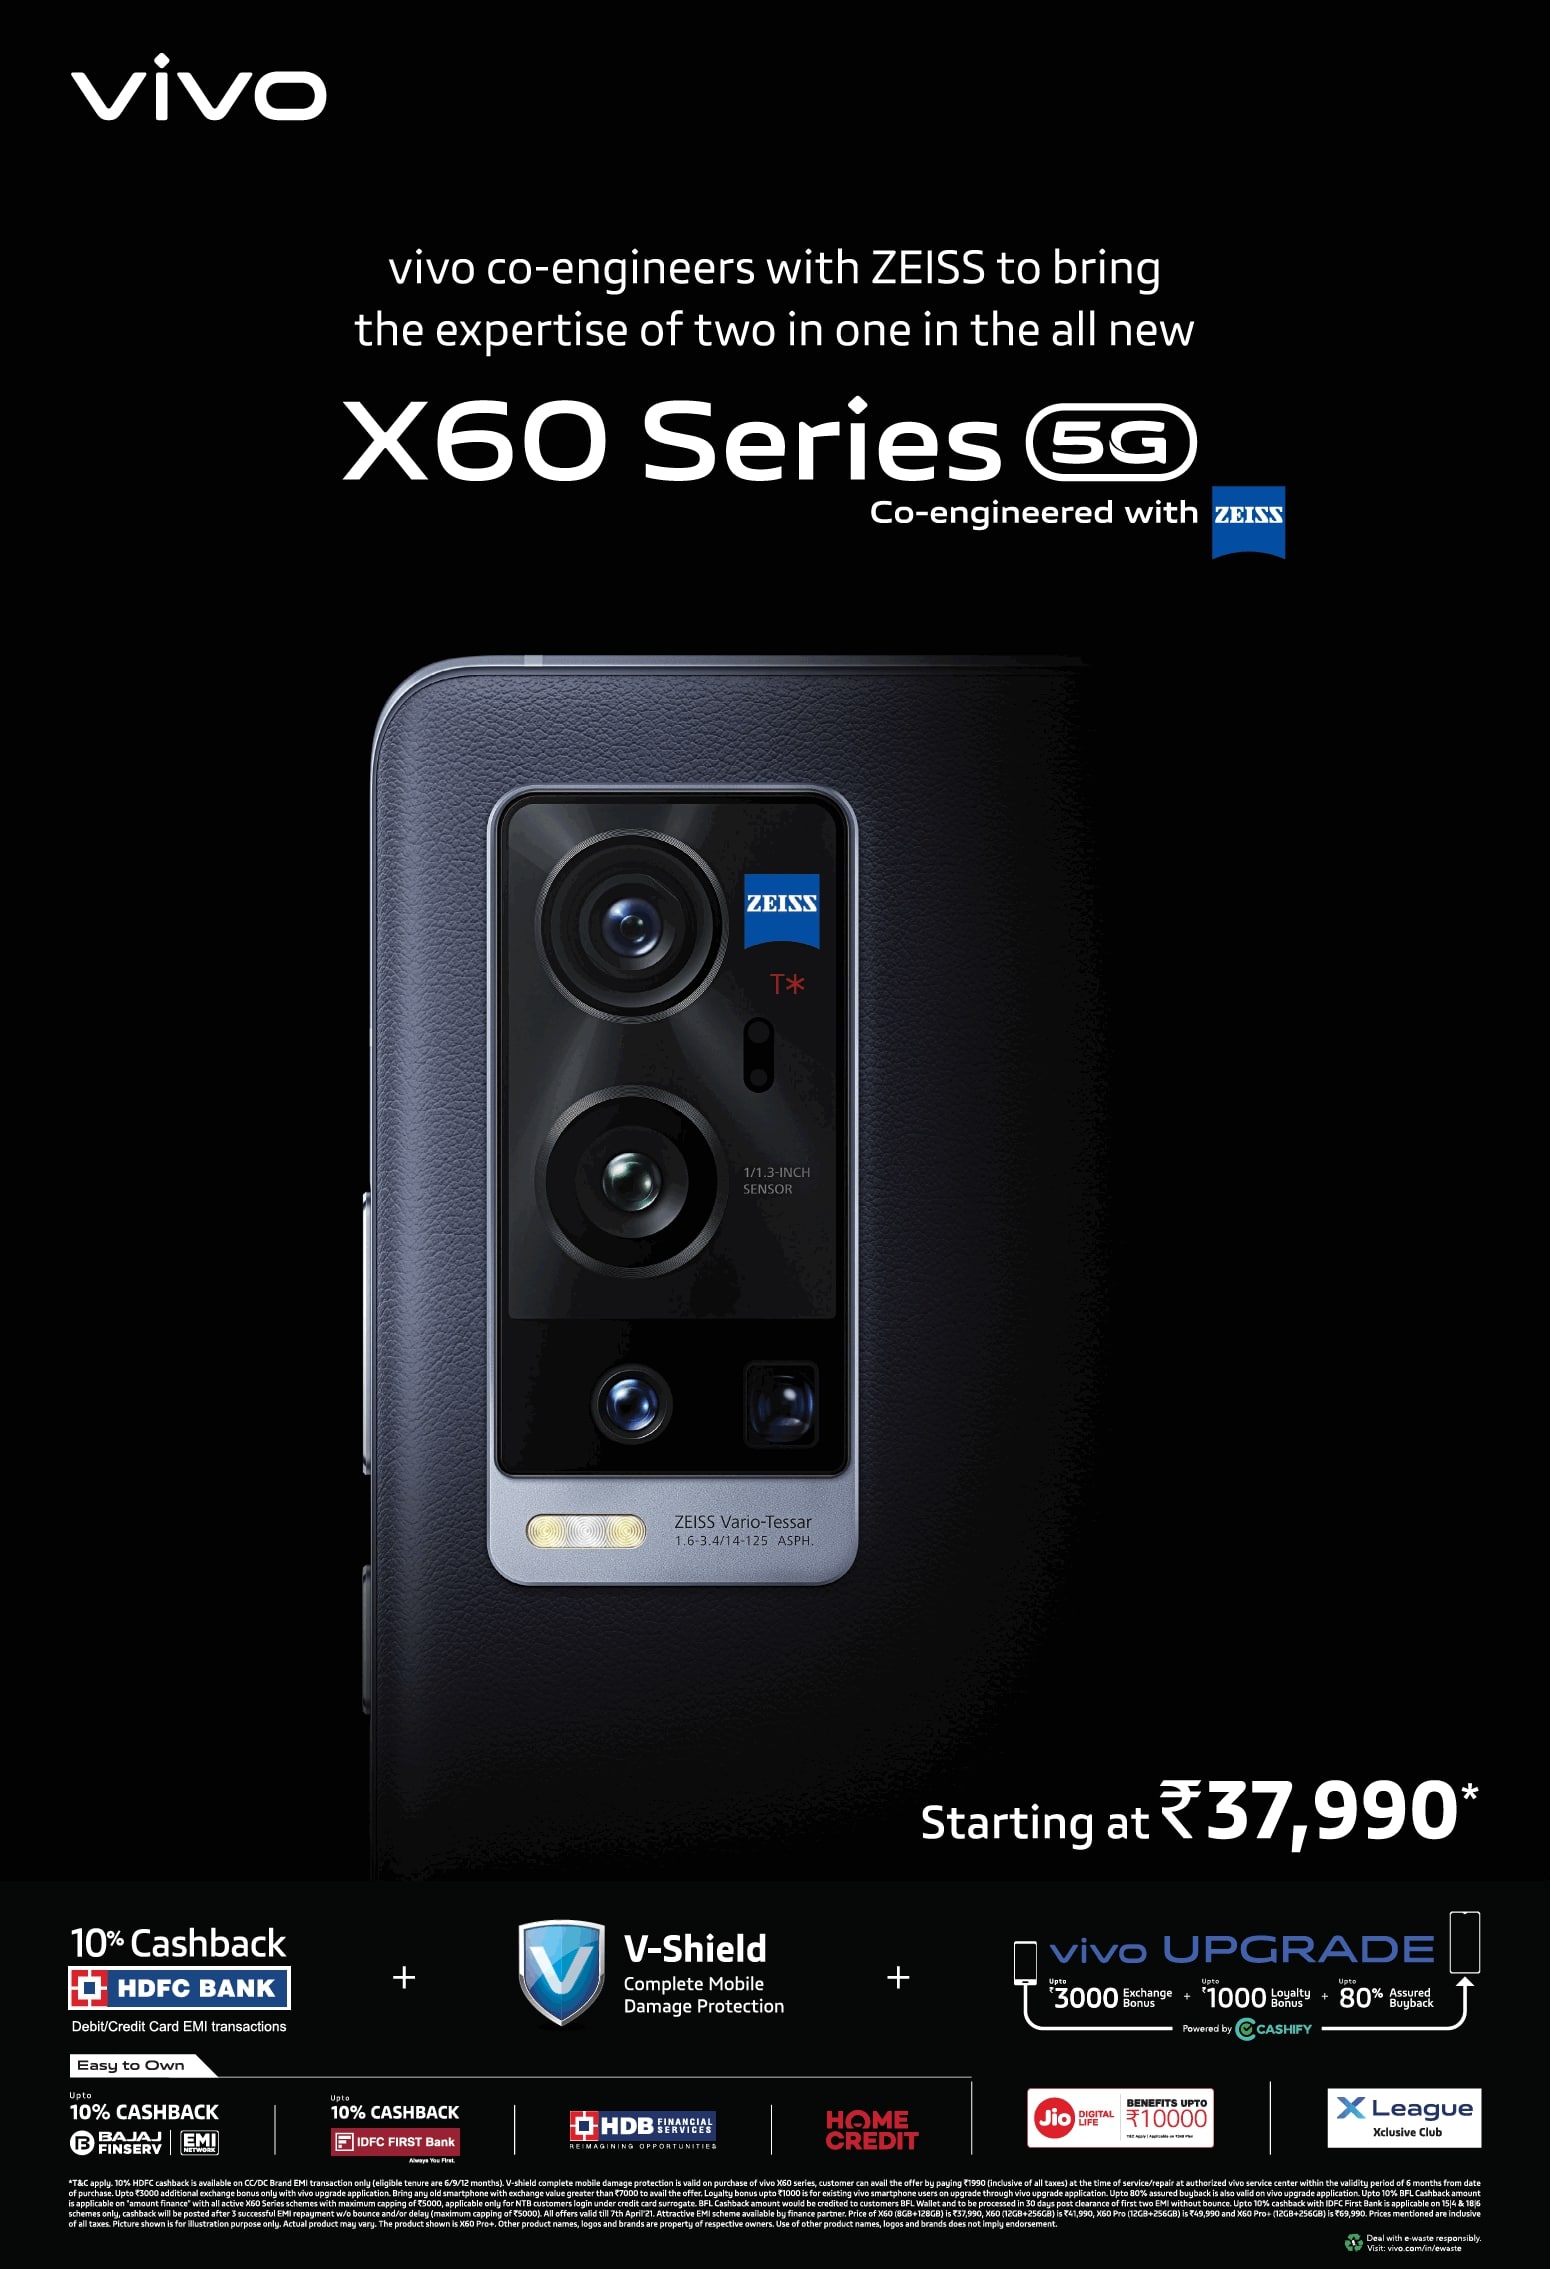 vivo-x60-series-5g-starting-at-rupees-37990-ad-times-of-india-mumbai-02-04-2021